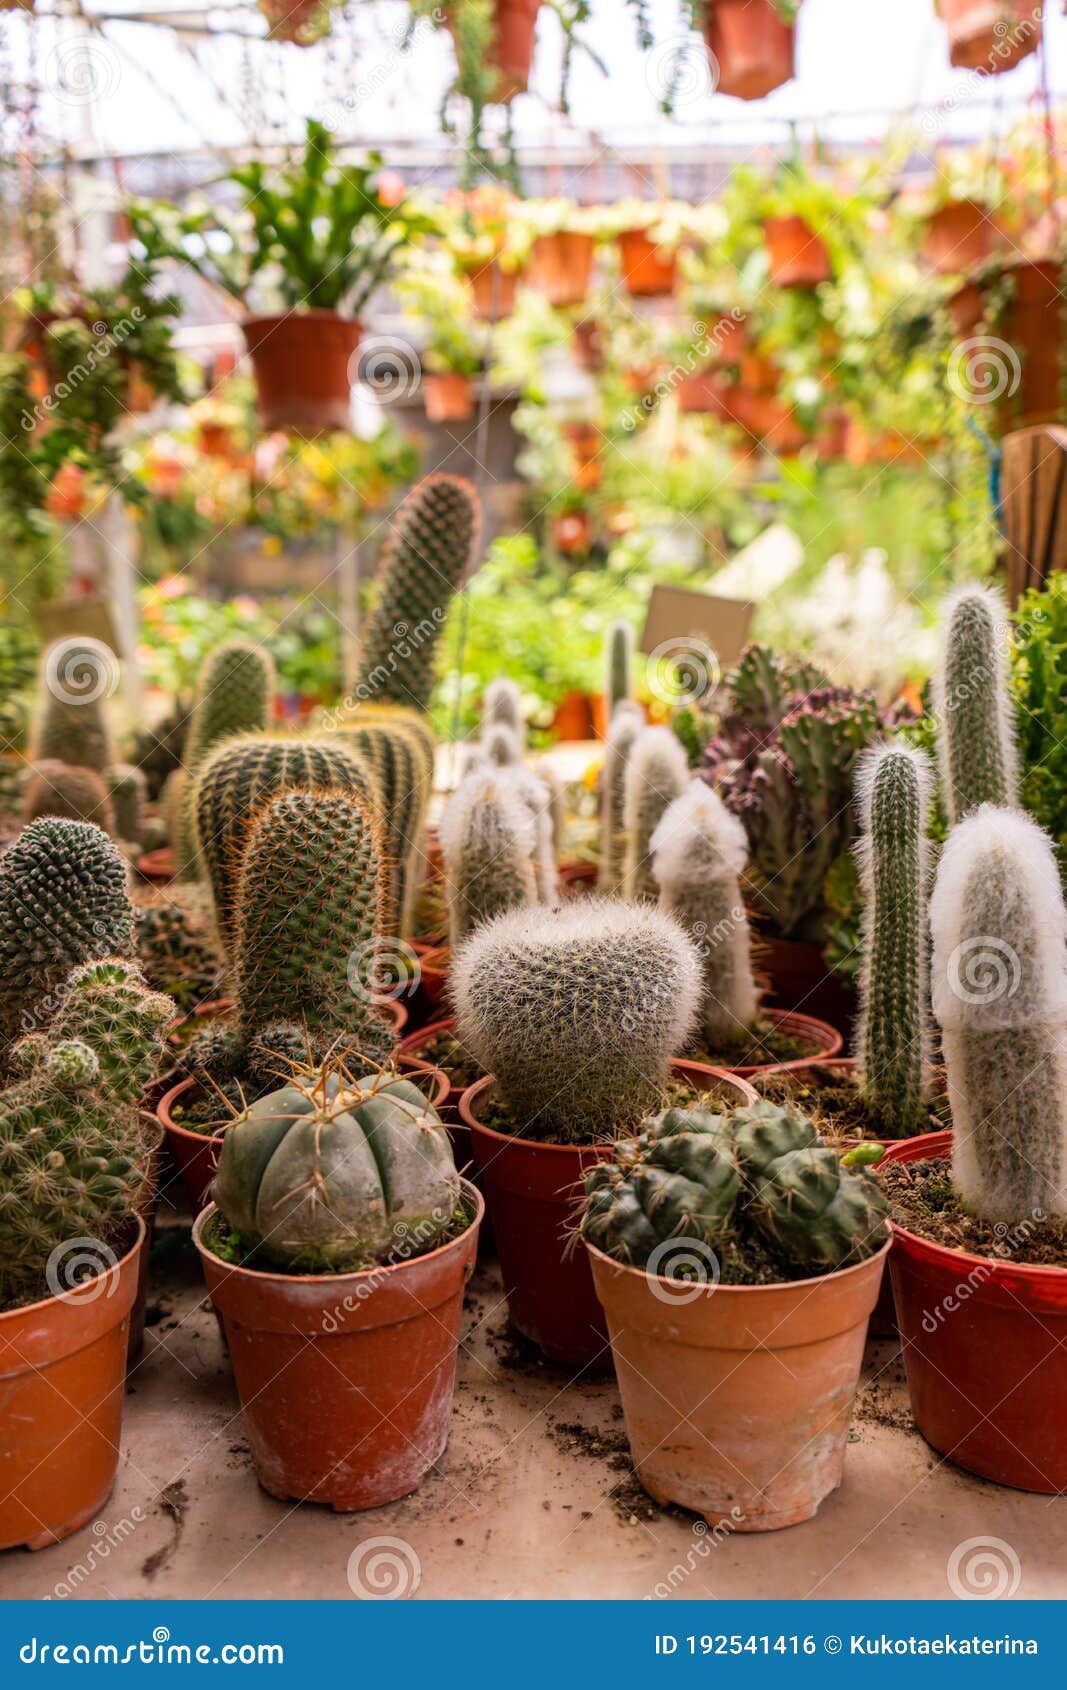 Tiendas De Plantas De Hogar Cactus De Diferentes Formas En Macetas Foto de  archivo - Imagen de podadizo, cactos: 192541416